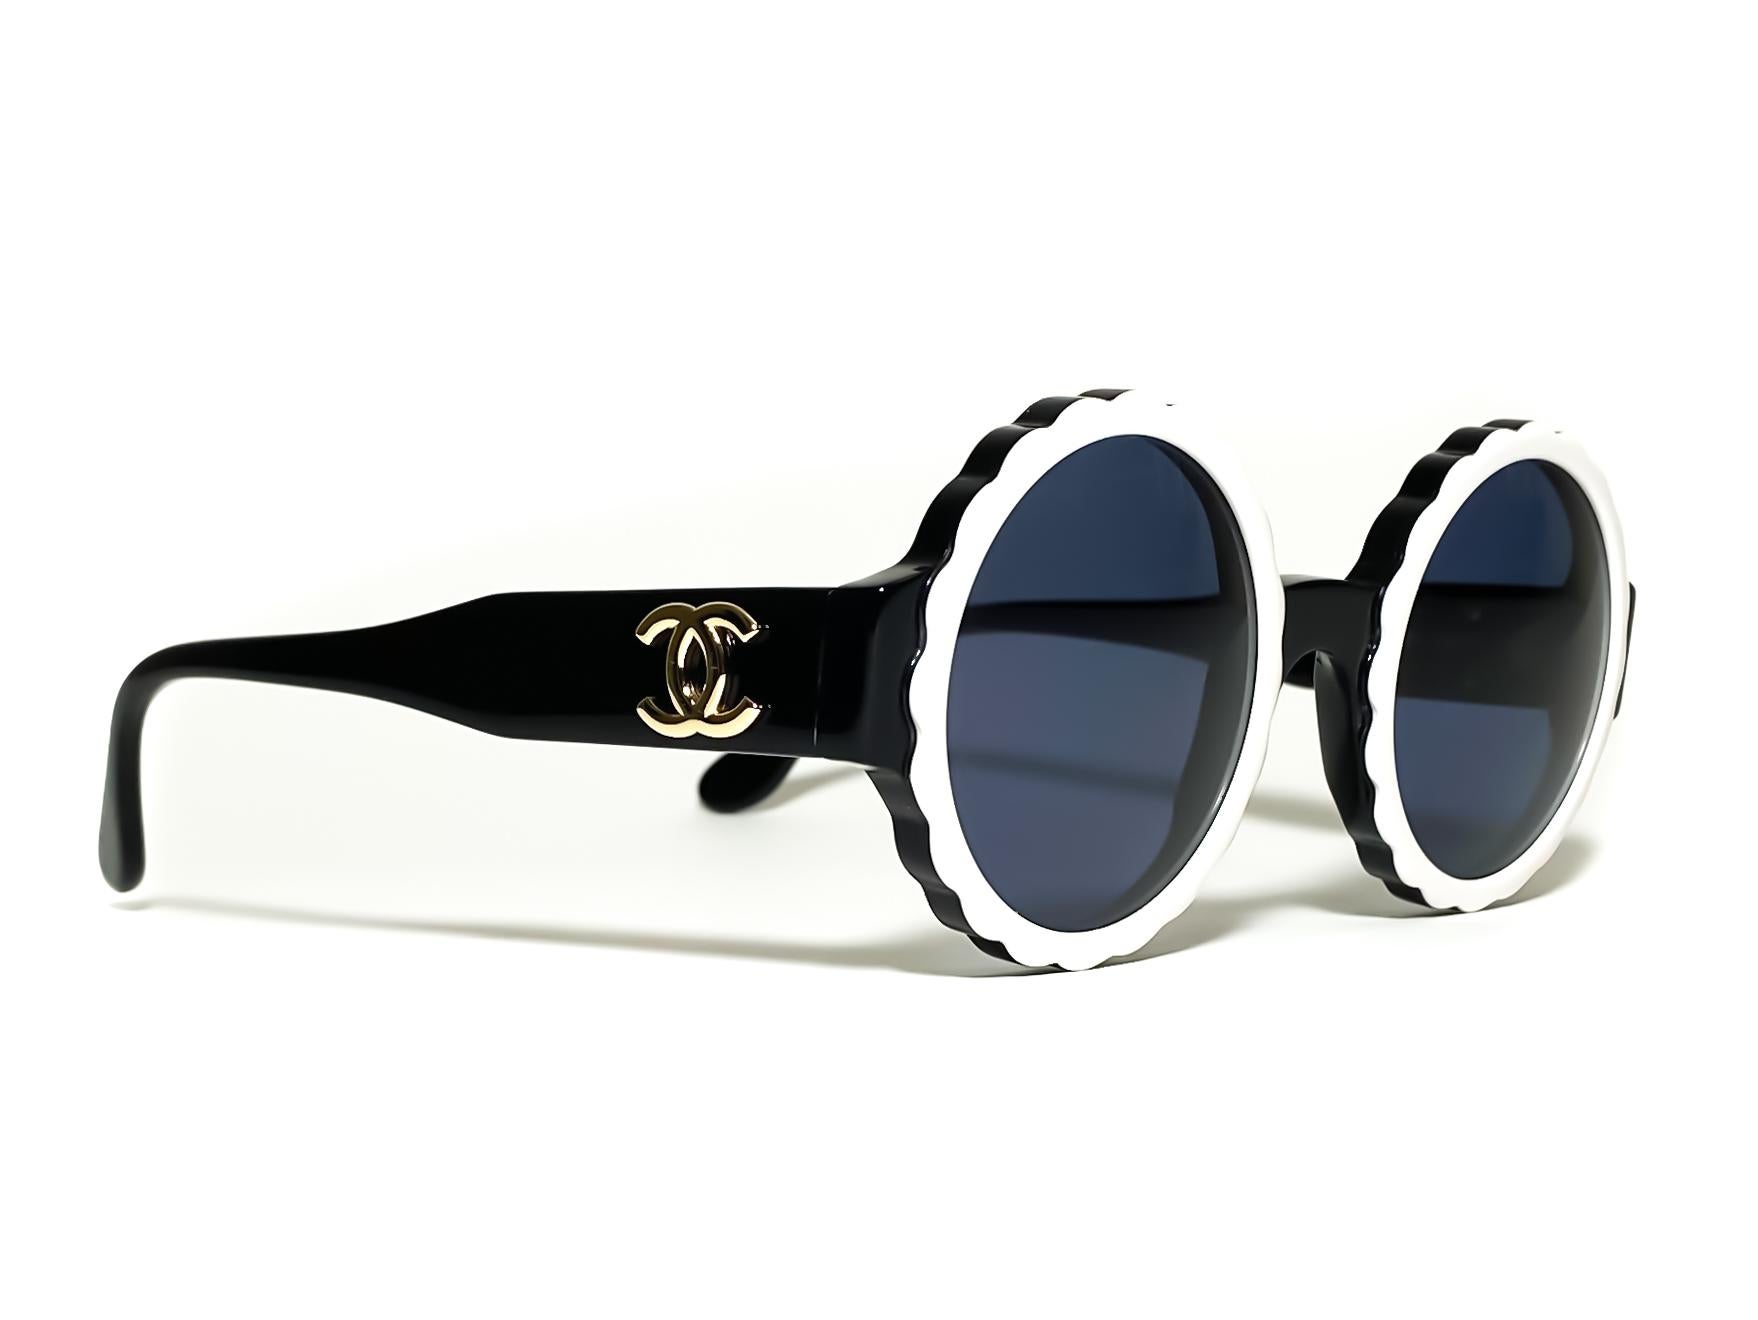 Chanel Runway 1994 Vintage Rare Black White Dial Sunglasses Sunglasses In Good Condition For Sale In Miami, FL